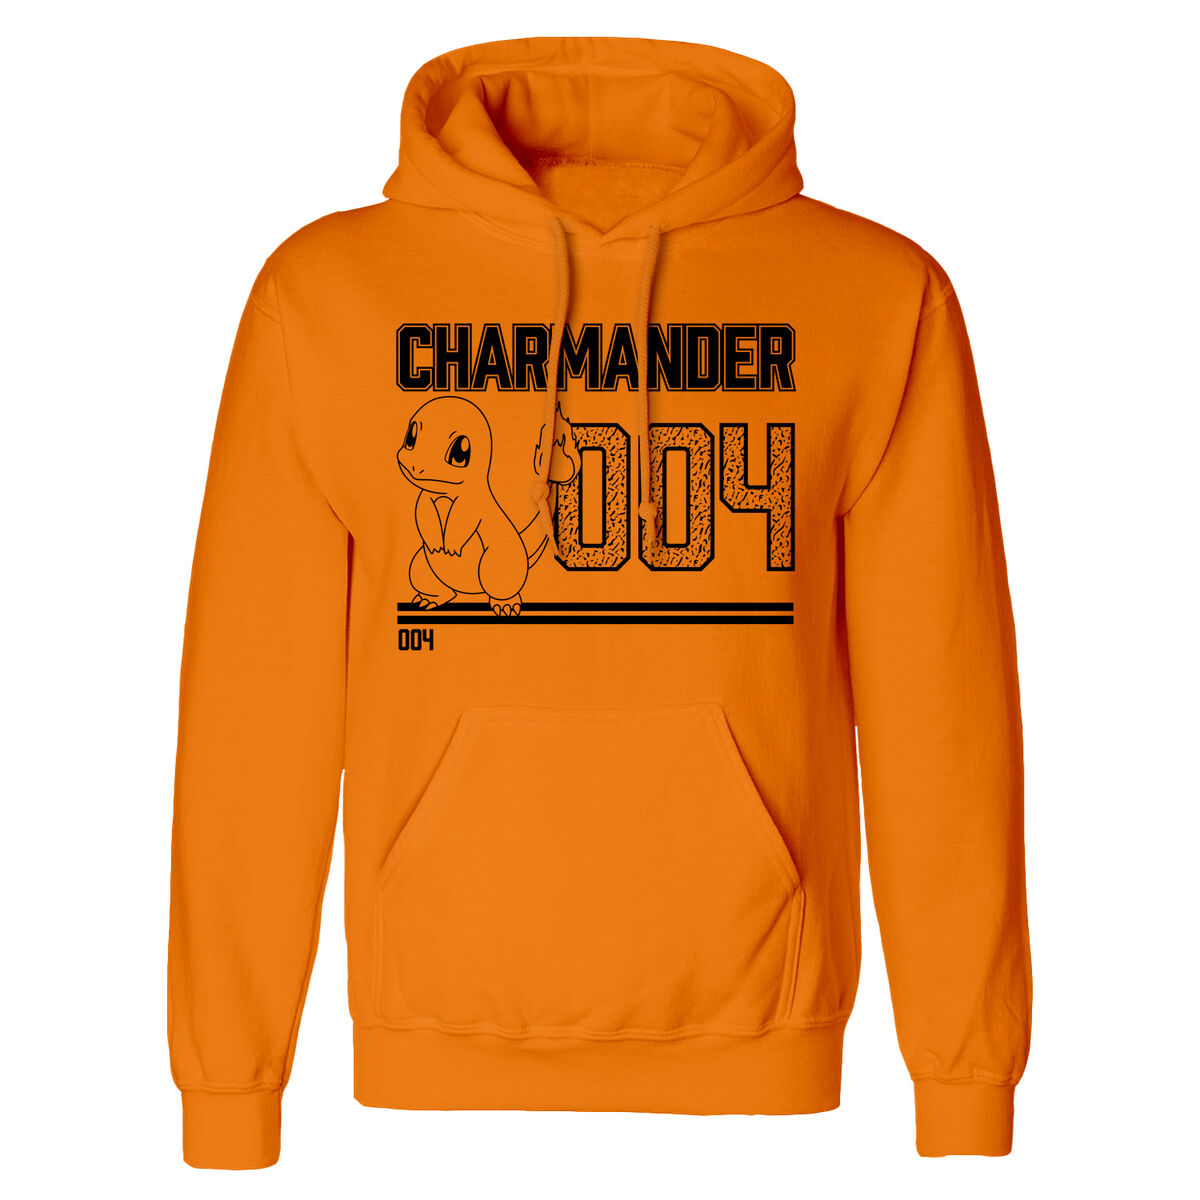 Osta tuote Unisex huppari Pokémon Charmander Line Art Oranssi verkkokaupastamme Korhone: Urheilu & Vapaa-aika 20% alennuksella koodilla VIIKONLOPPU